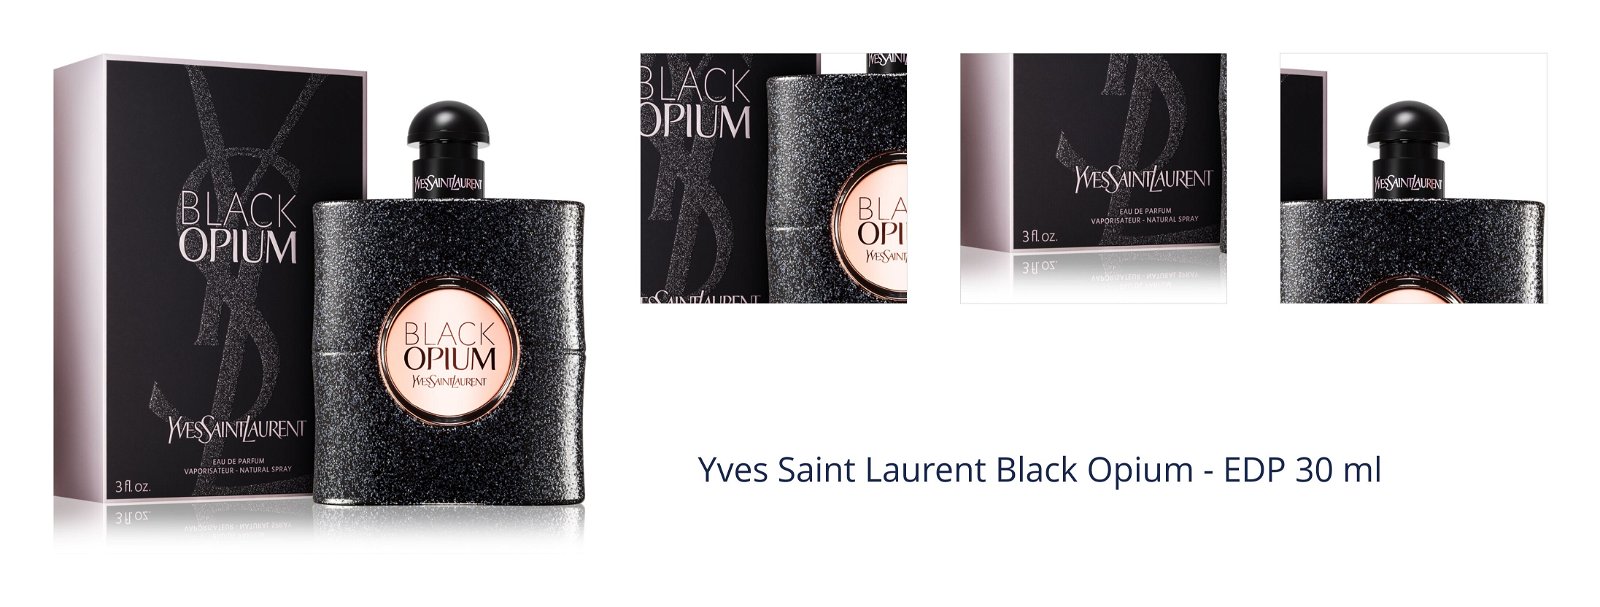 Yves Saint Laurent Black Opium - EDP 30 ml 1